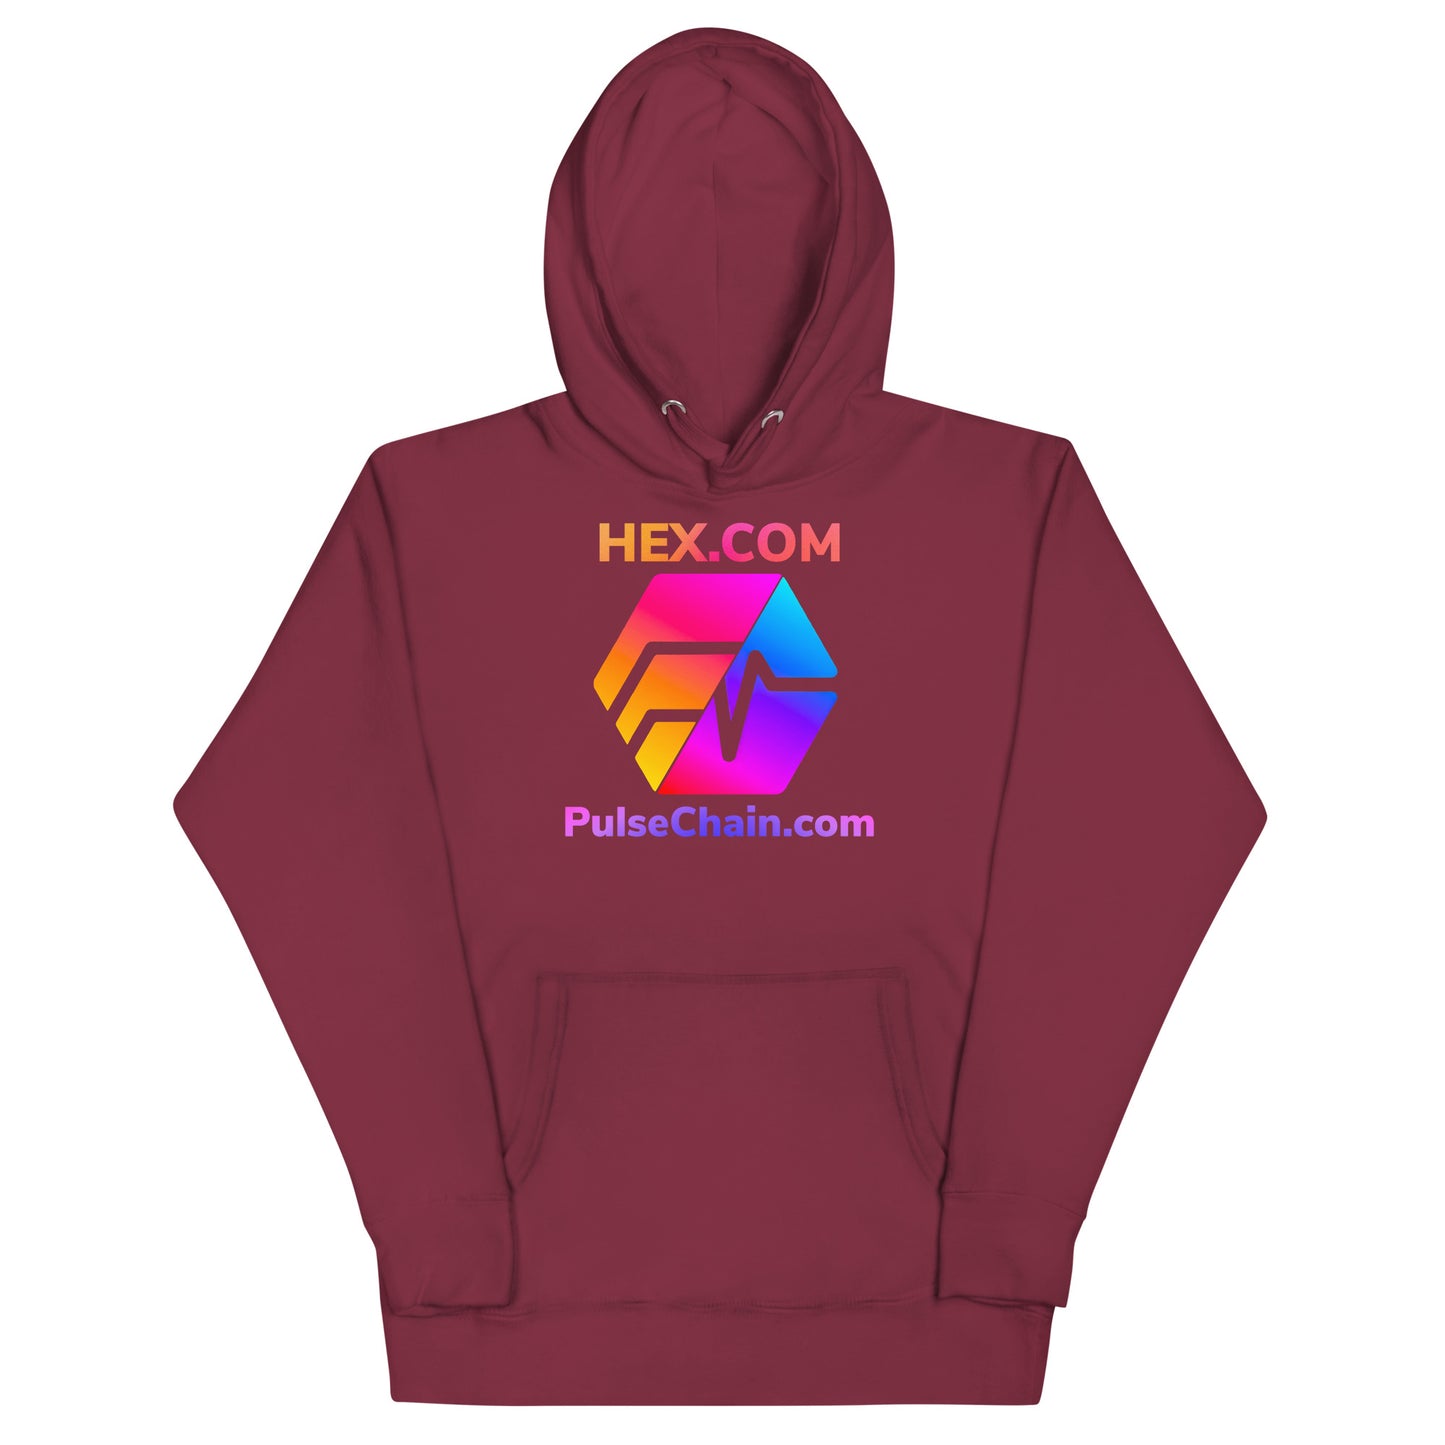 HEX.COM/PulseChain.com Unisex Premium Hoodie